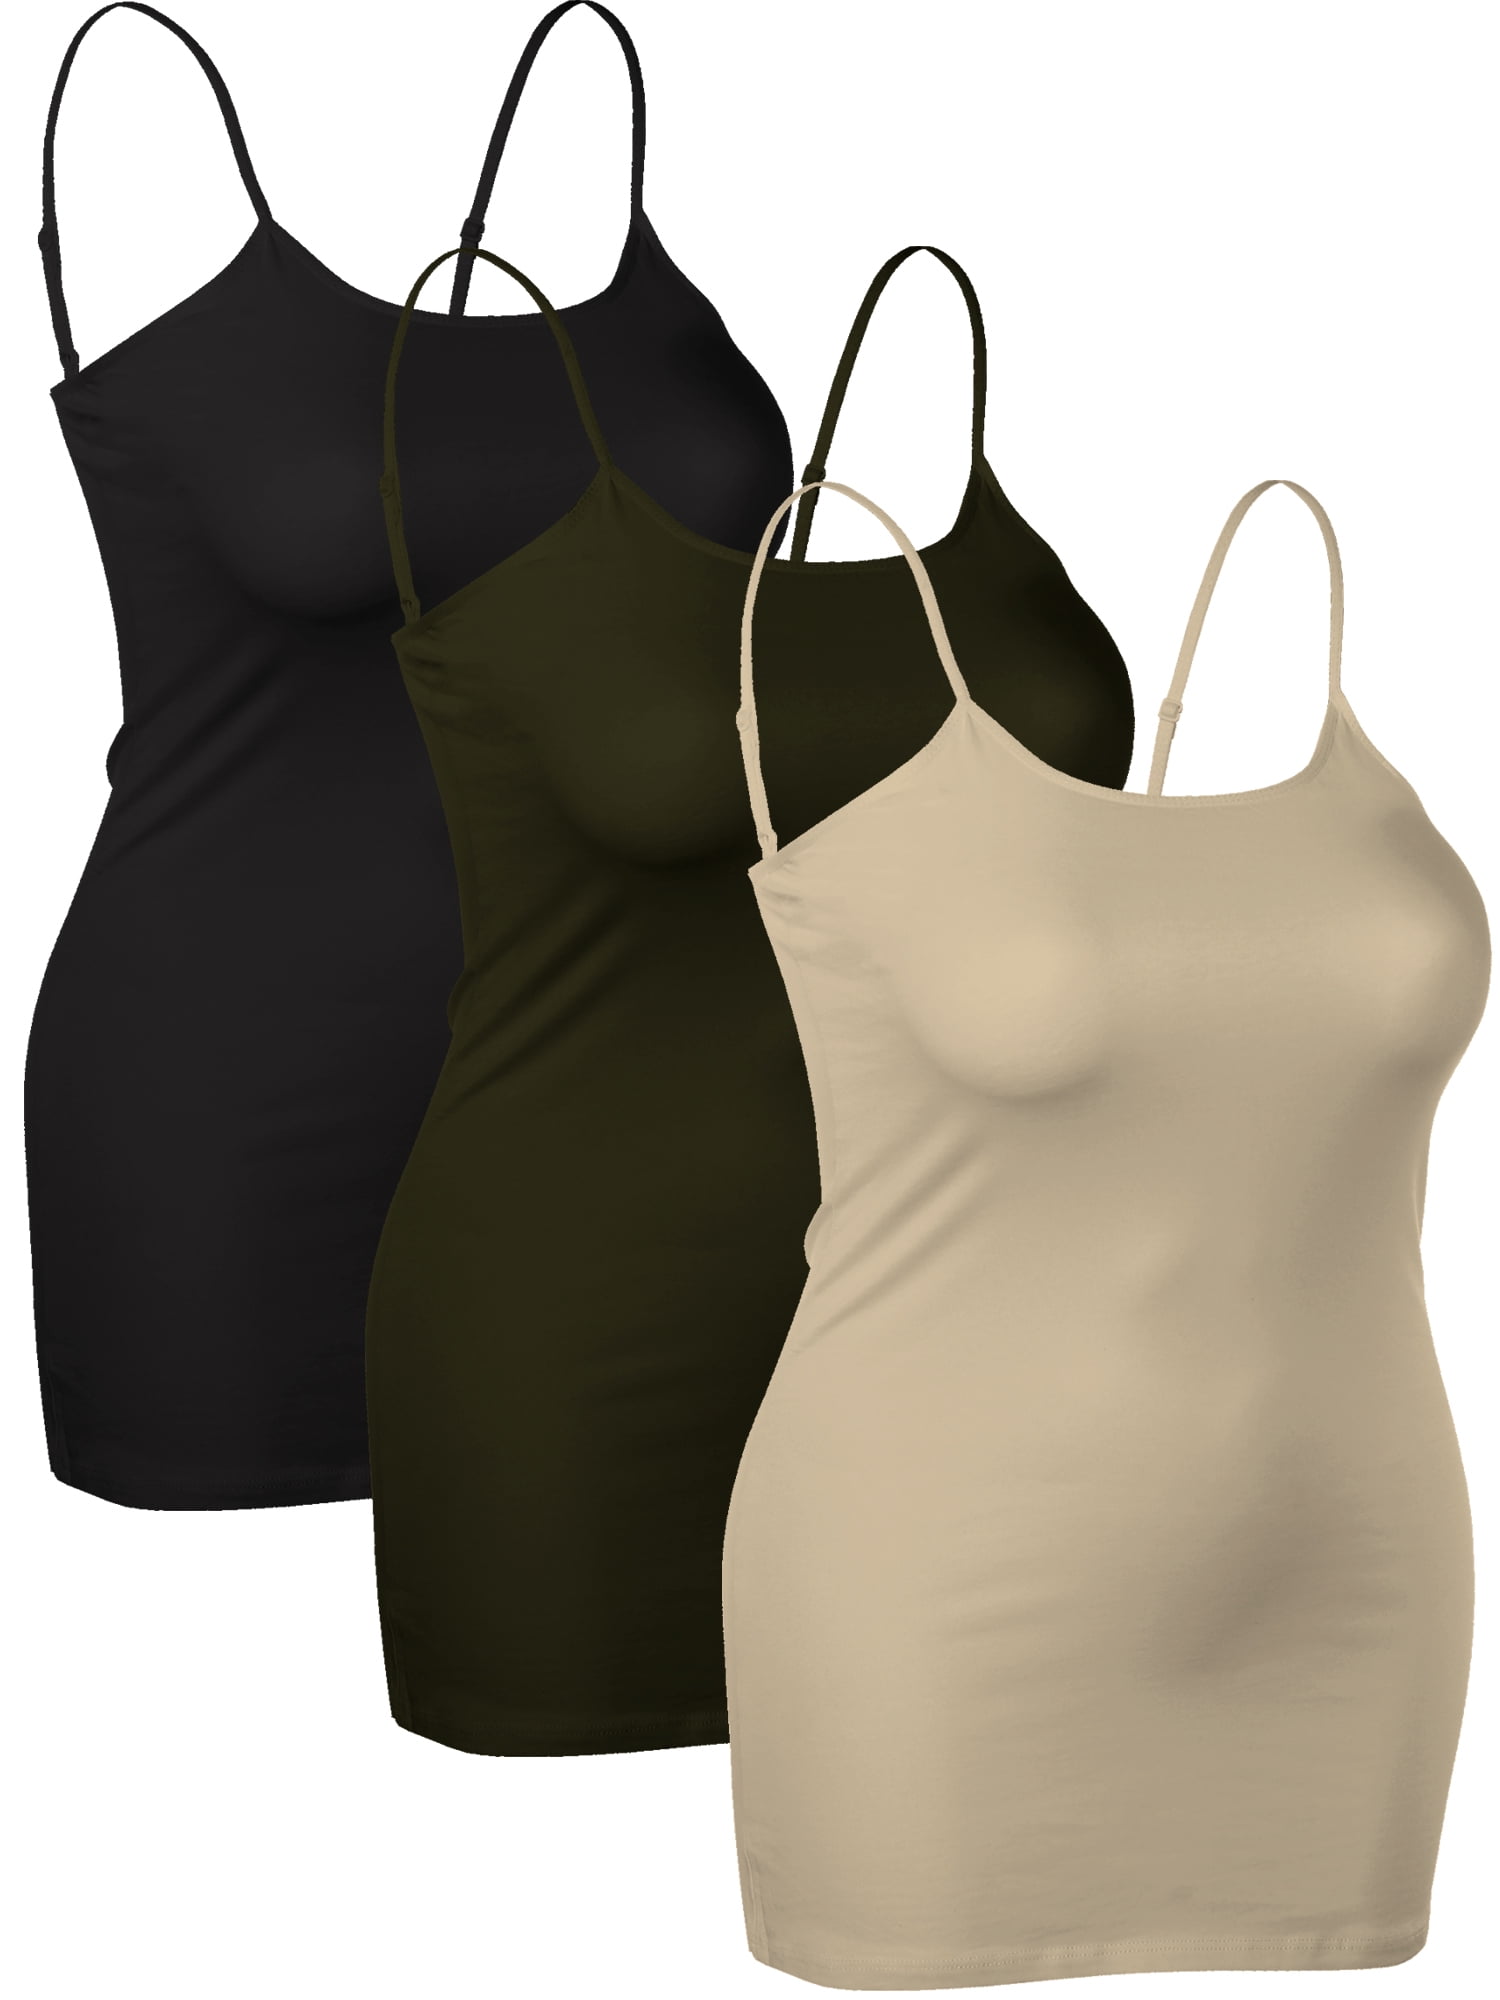 Emmalise Women's Basic Casual Long Camisole Cami Top Value Combo - 3Pk -  Black, Burgundy, Olive, Large